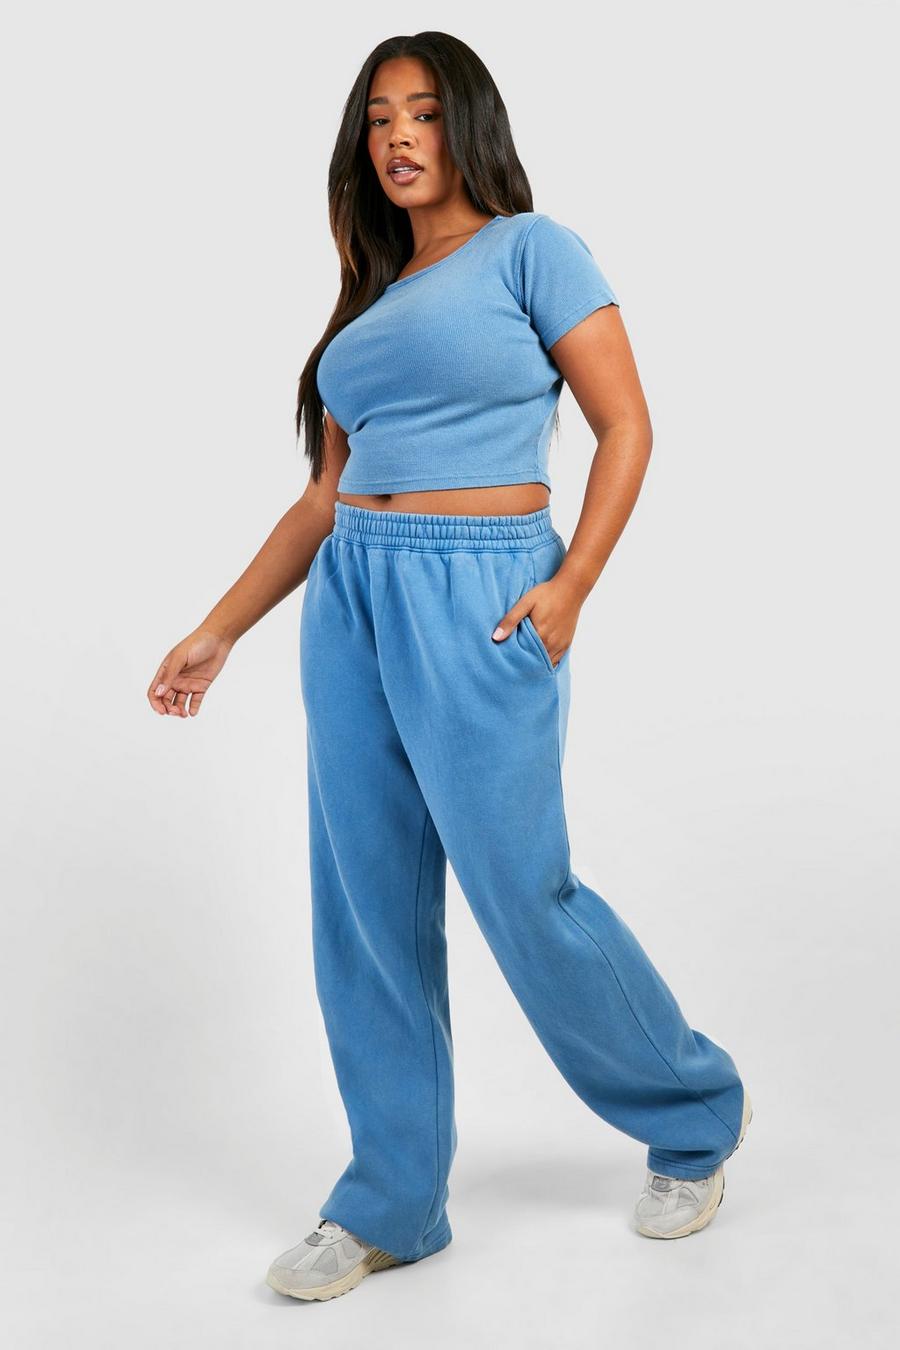 Pantaloni tuta dritti Plus Size slavati, Denim-blue image number 1